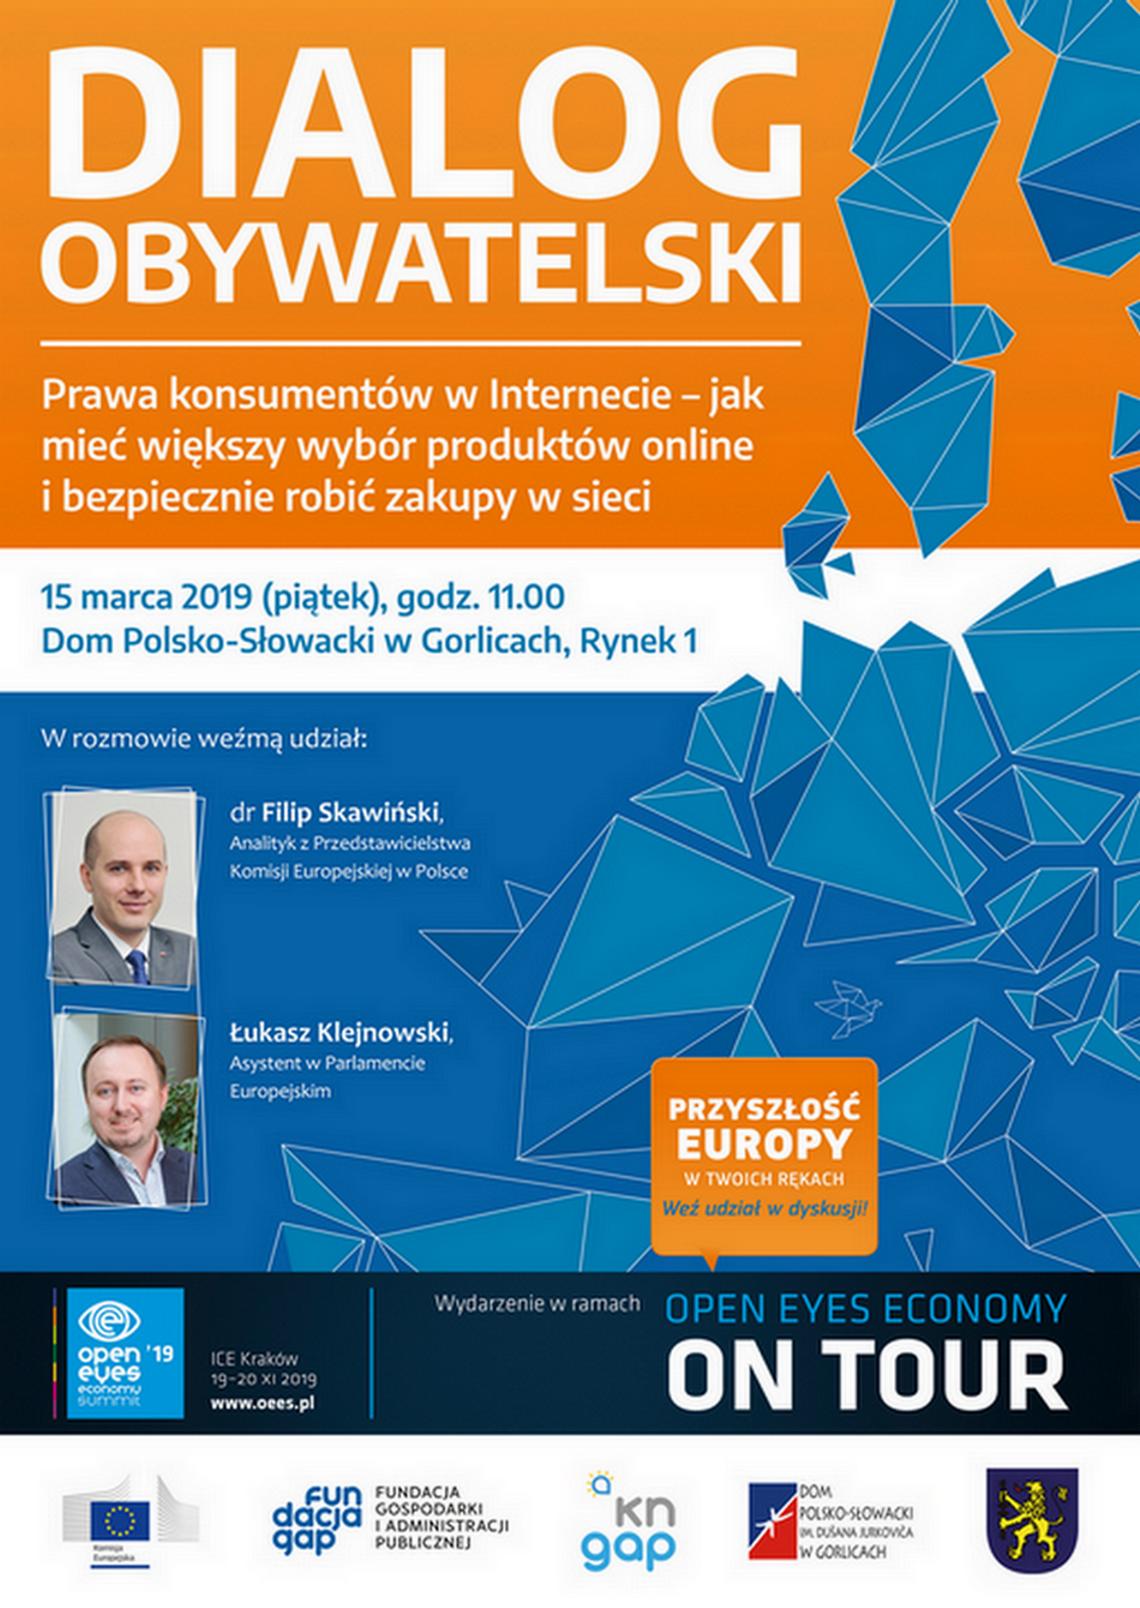 Dialog obywatelski - prawa konsumentów w Internecie - Dom Polsko-Słowacki - Gorlice